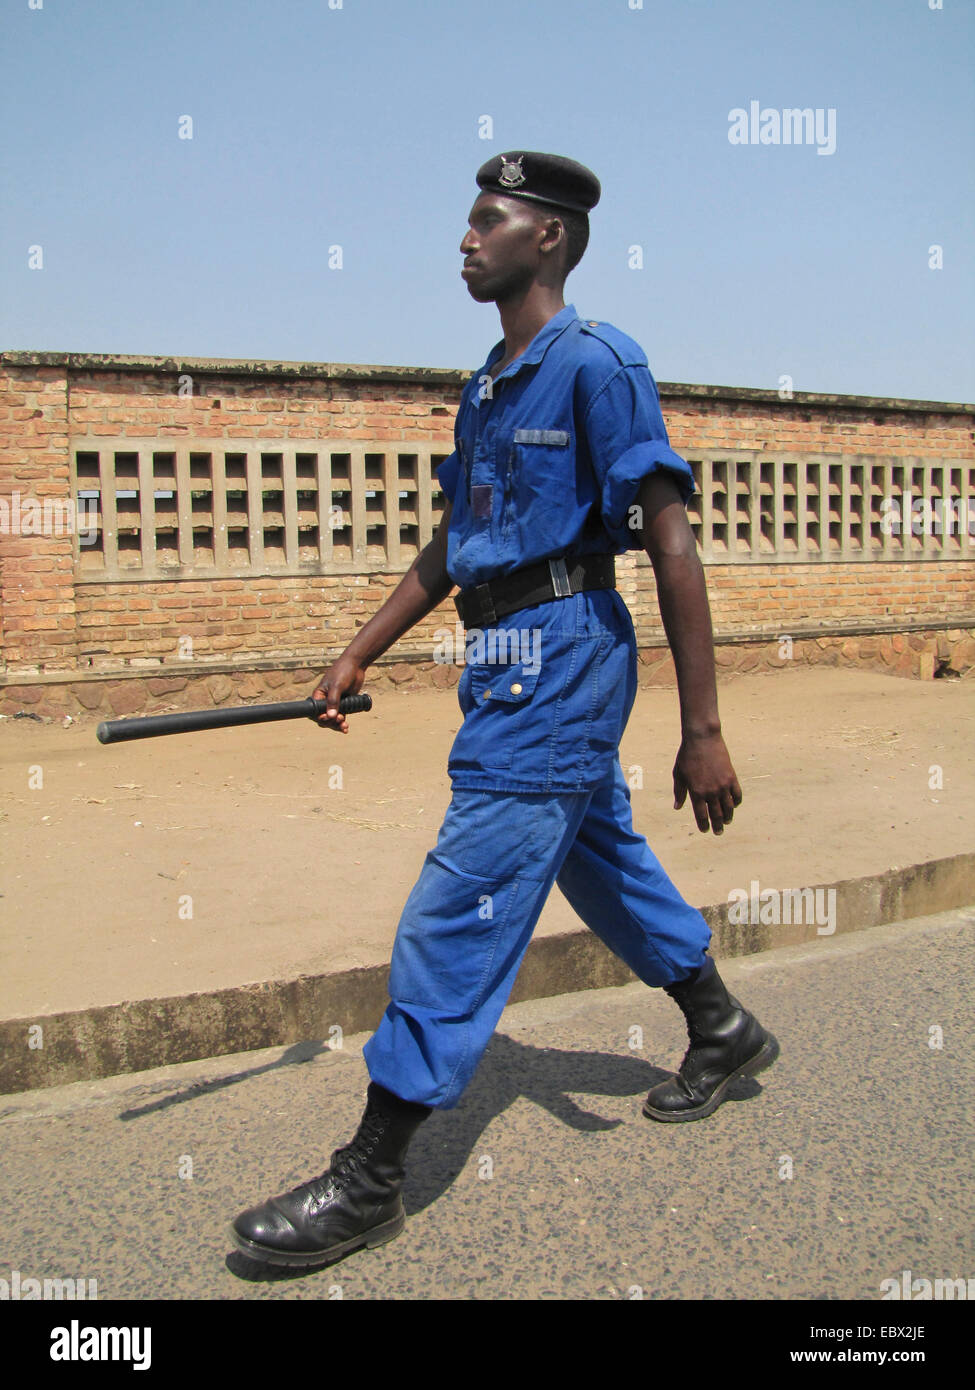 Funzionario di polizia con baton pattugliamento su una larga strada della capitale, Burundi Bujumbura marie, Rohero 1, Bujumbura Foto Stock